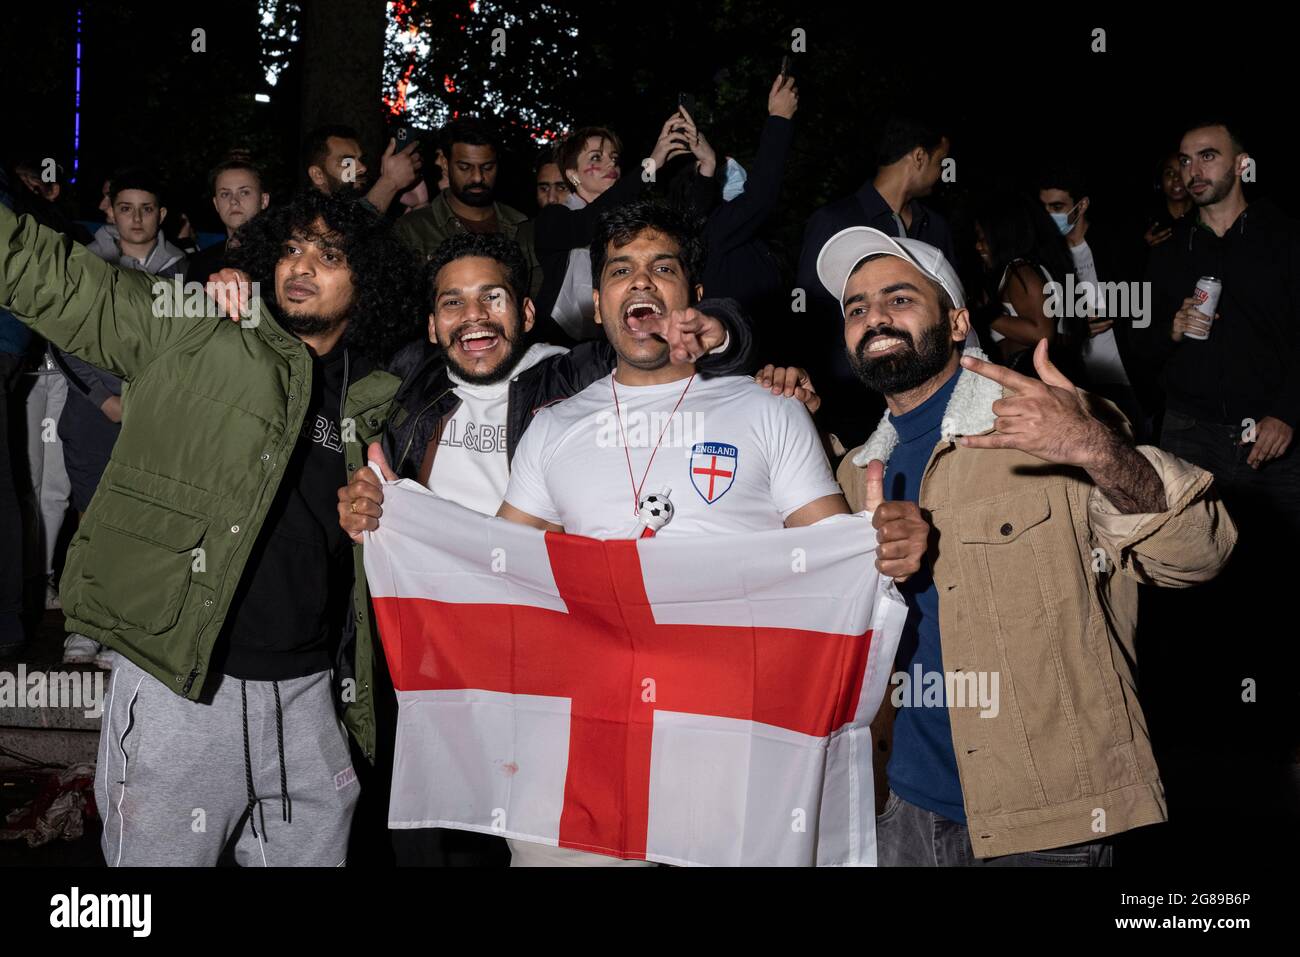 La fiesta de los aficionados a Inglaterra durante la final de la Eurocopa 2020 de Inglaterra contra Italia, Leicester Square, Londres, 11 de julio de 2021 Foto de stock